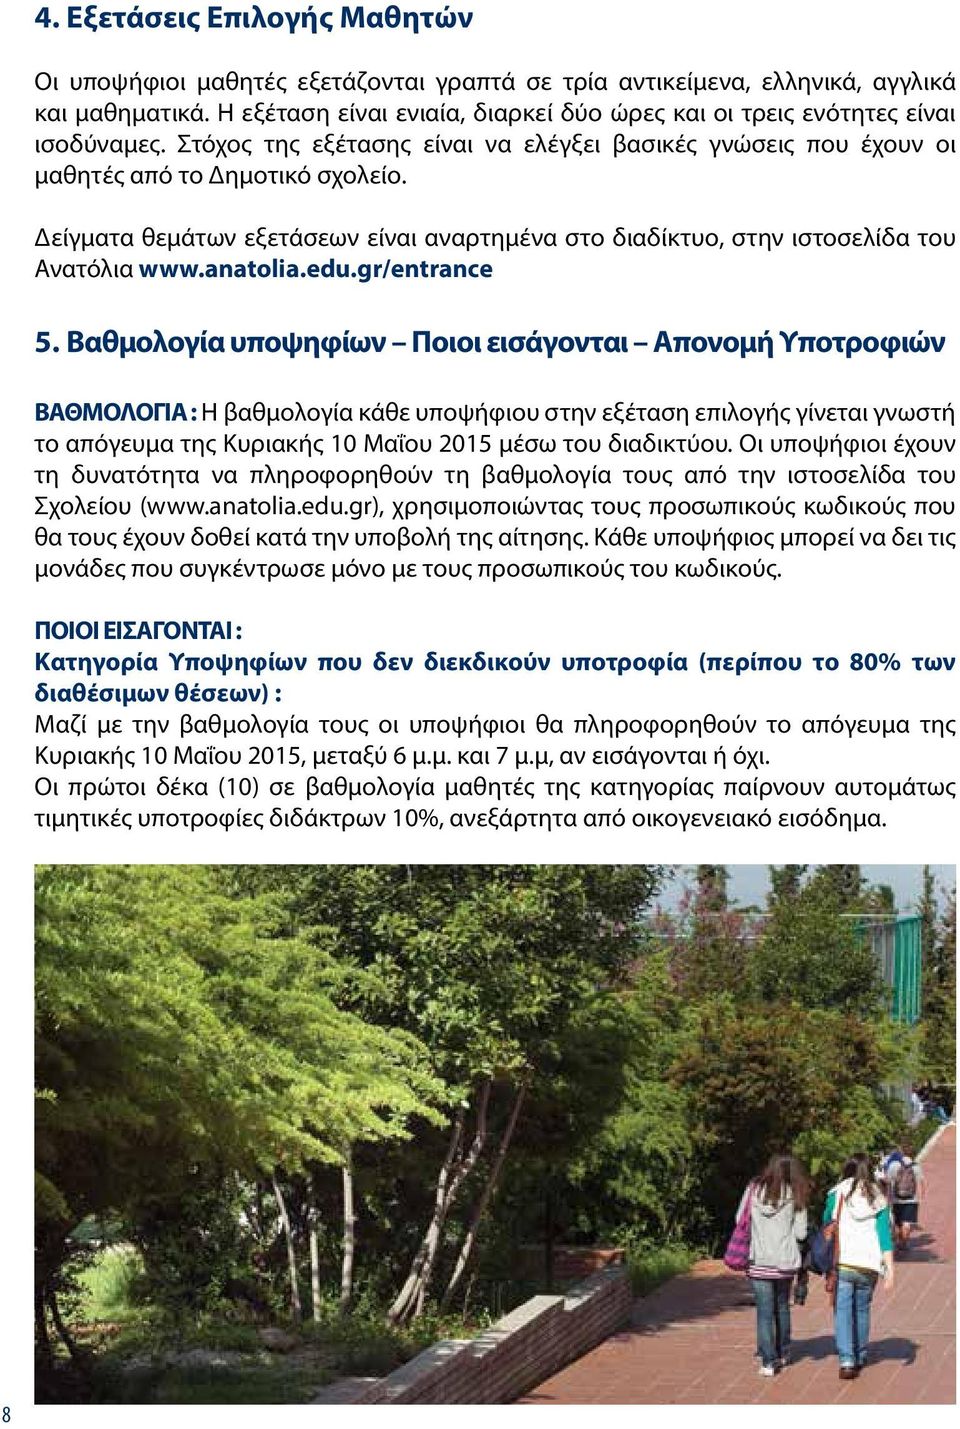 Δείγματα θεμάτων εξετάσεων είναι αναρτημένα στο διαδίκτυο, στην ιστοσελίδα του Ανατόλια www.anatolia.edu.gr/entrance 5.